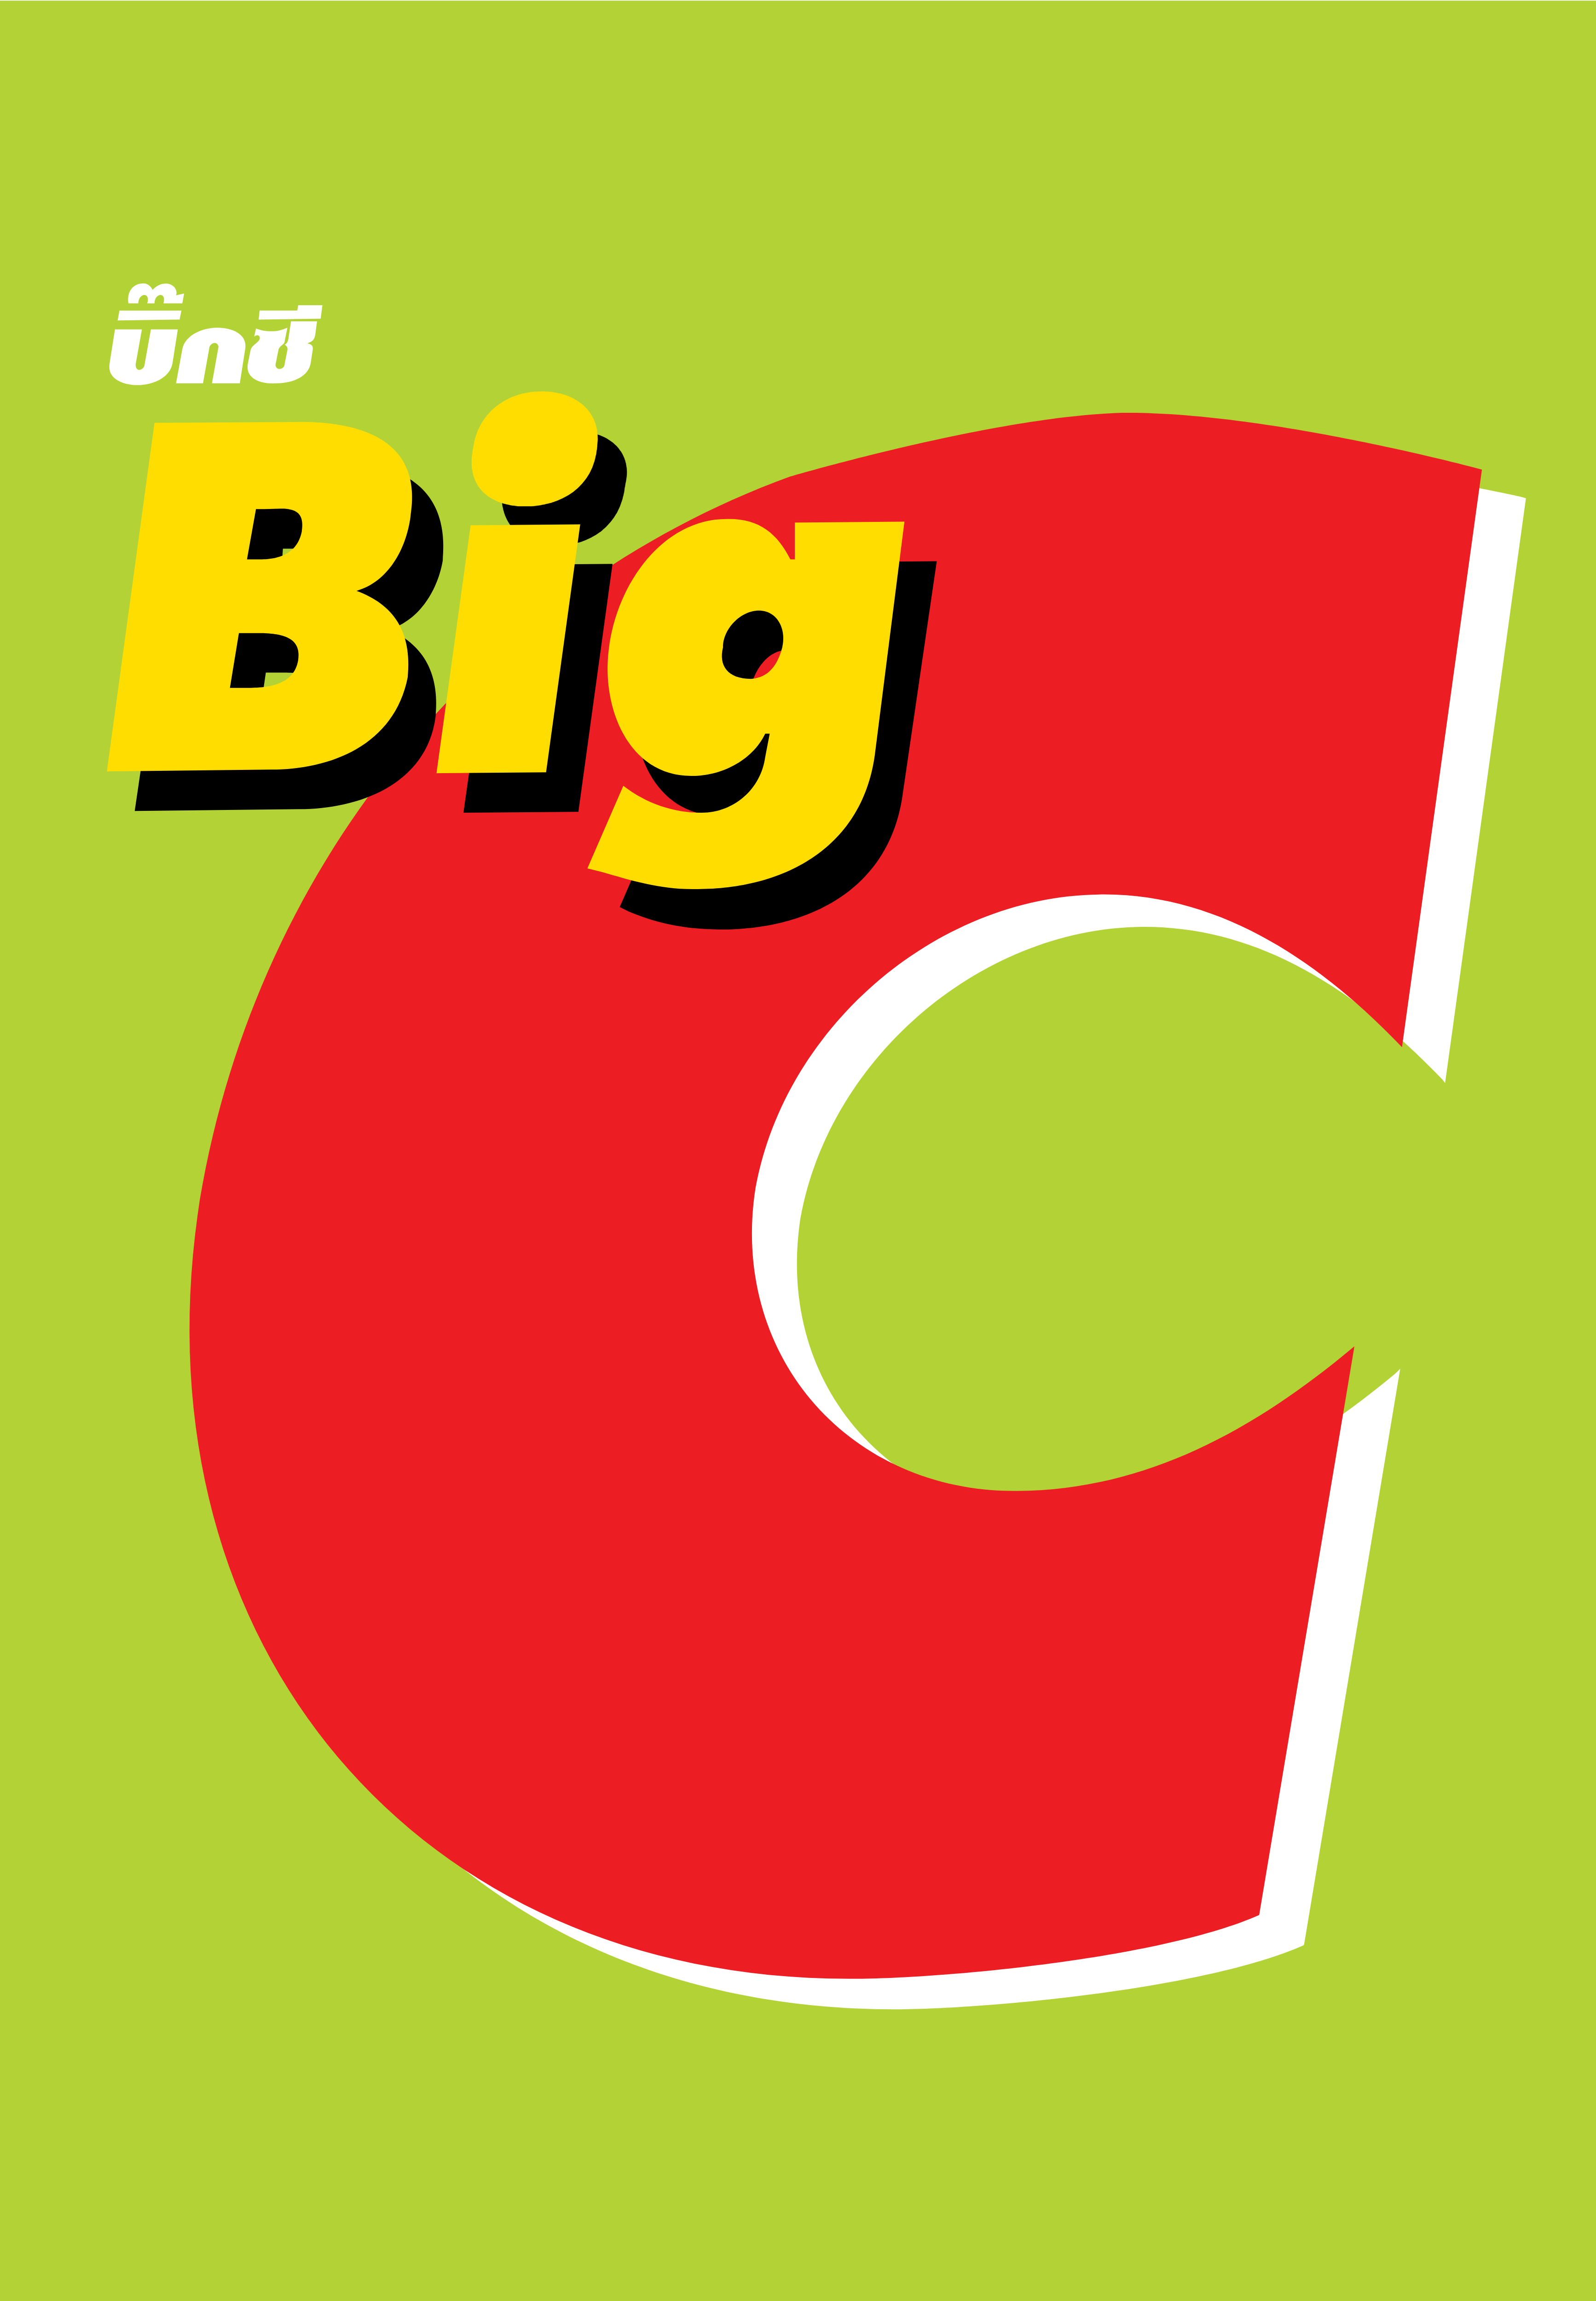 Large Red C Logo - Big C – Logos Download